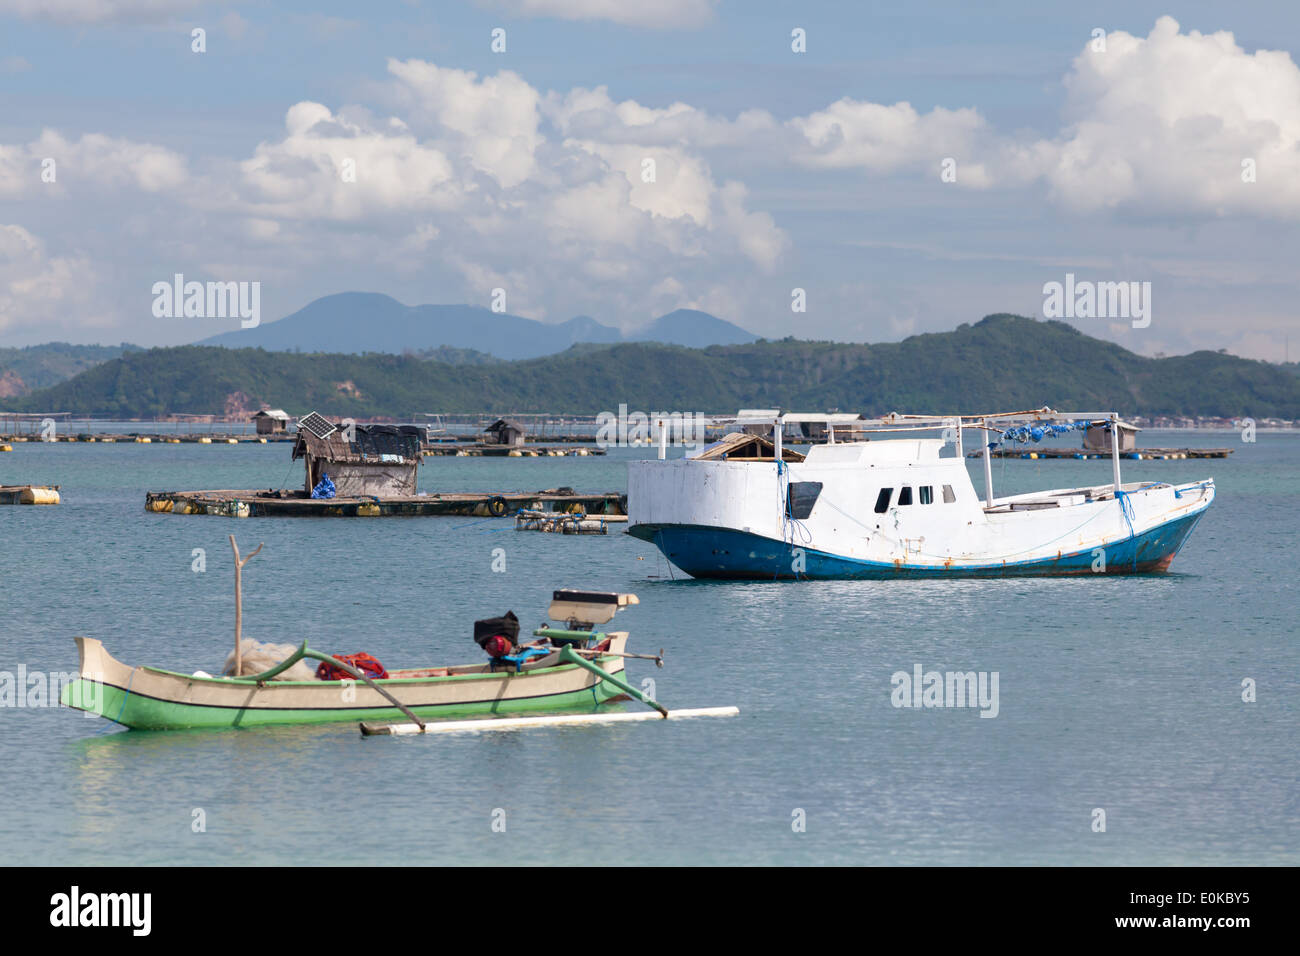 Barche e capanne flottante (utilizzato per far crescere i frutti di mare) - scenario della baia di Ekas, visto dalla regione di Ekas, Lombok, Indonesia Foto Stock